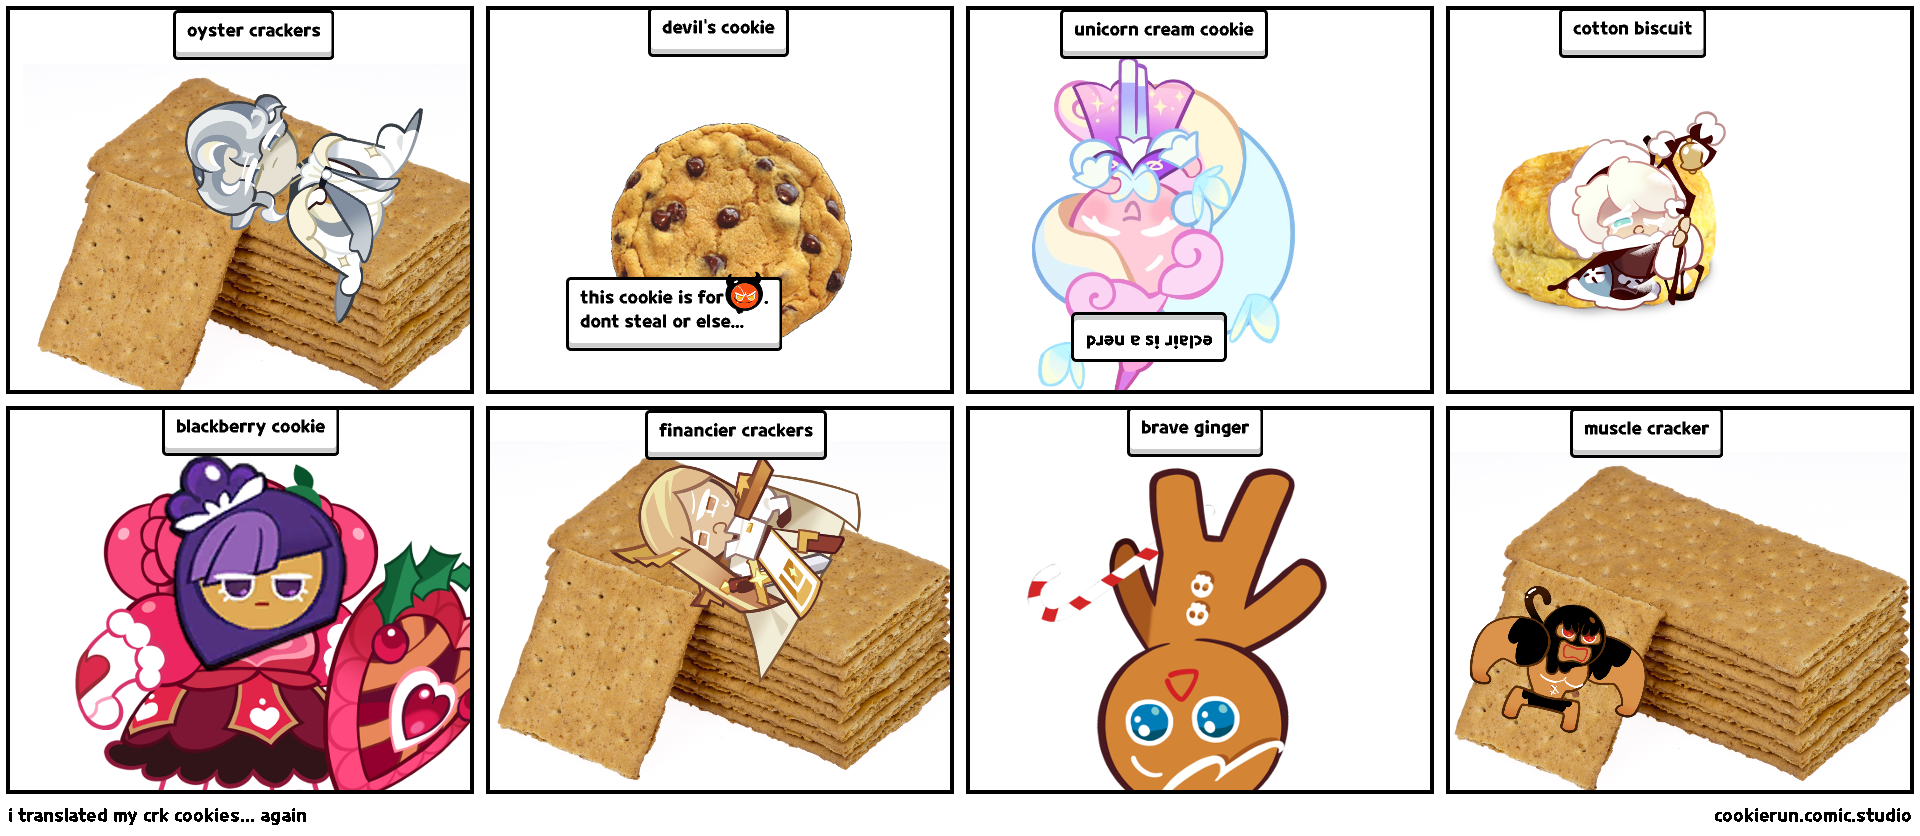 i translated my crk cookies... again